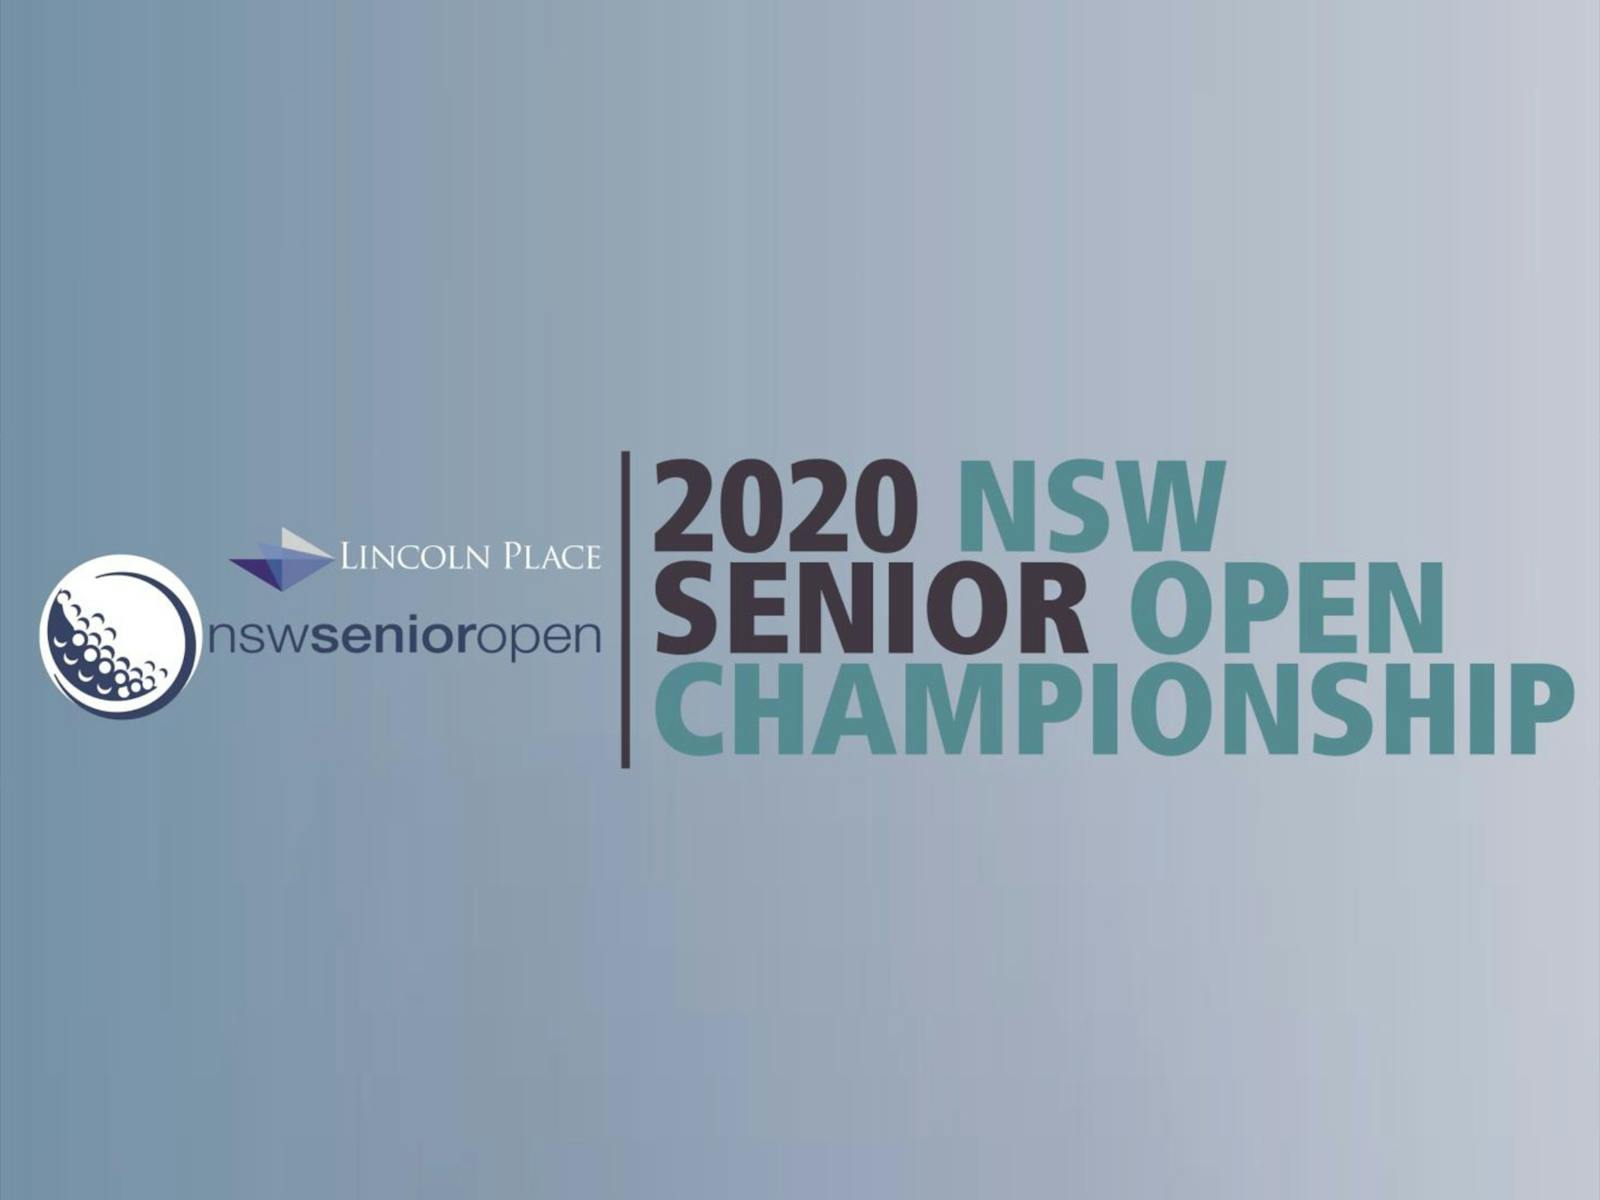 Image for Men's NSW Senior Open